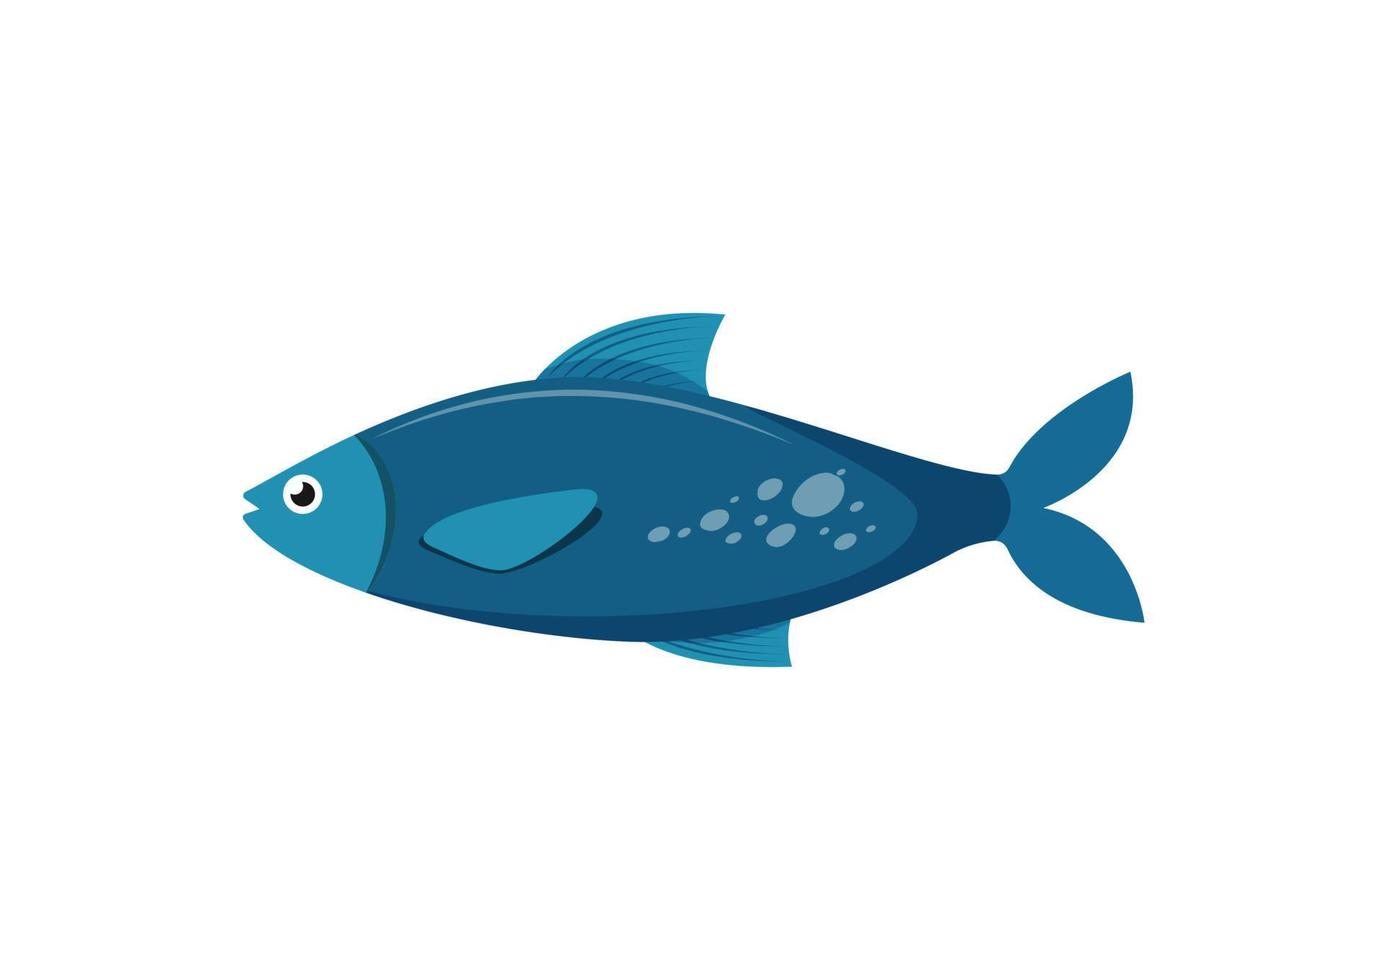 poisson bleu de dessin animé dans un style plat. illustration vectorielle de poisson de mer isolé sur fond blanc vecteur